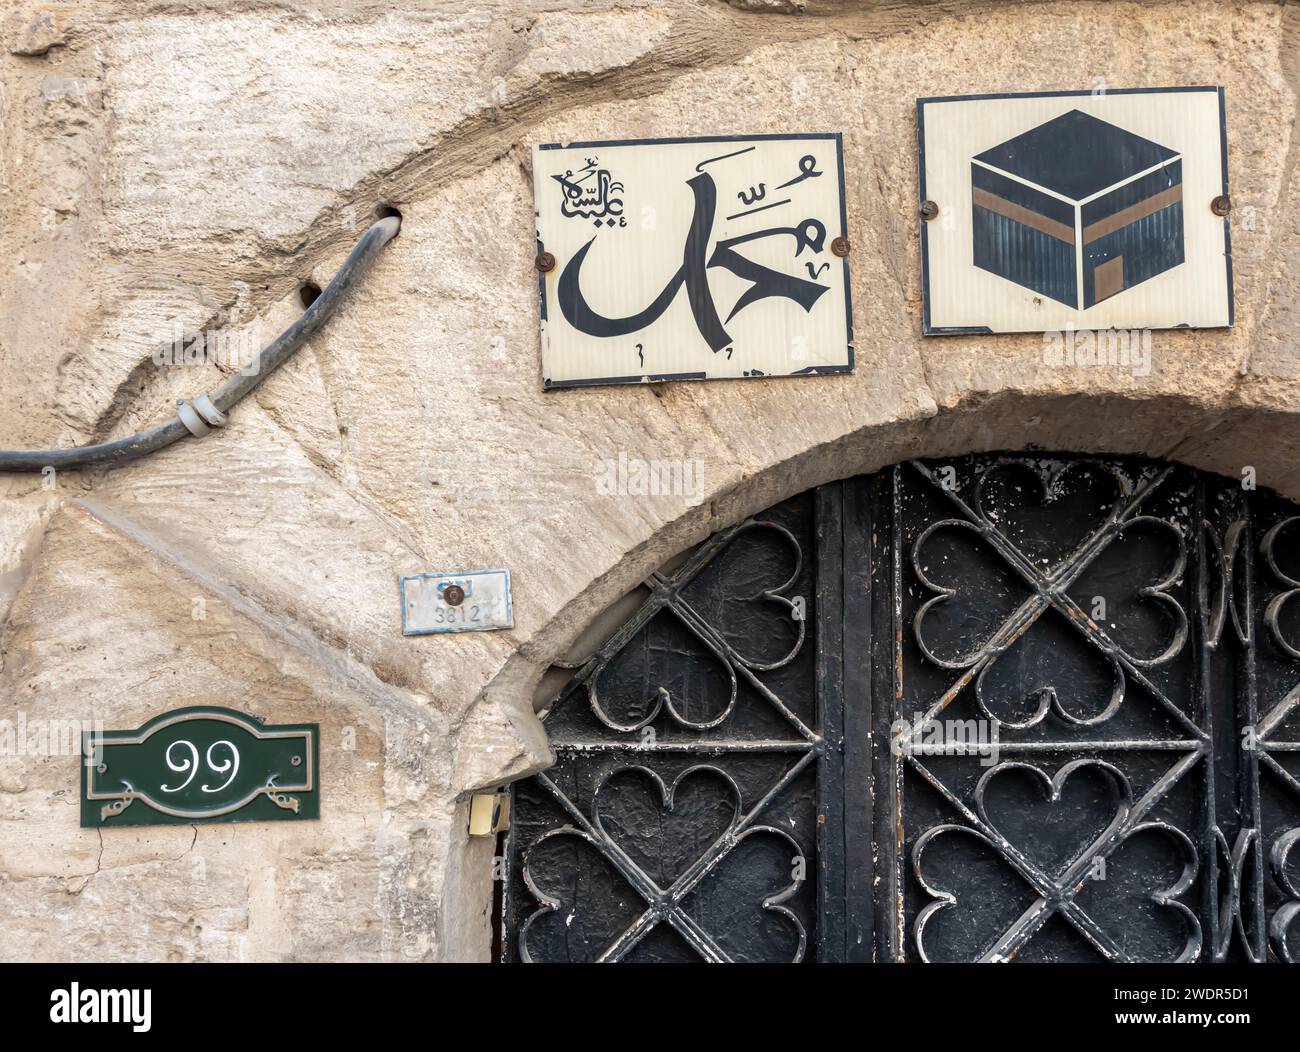 Türnummer, Straßentür Nummer, Schilder an der alten Tür am Haus im historischen Mardin Türkei, Kaaba Bild an der Tür, Kaaba Schilder, arabisch beschriftet Stockfoto